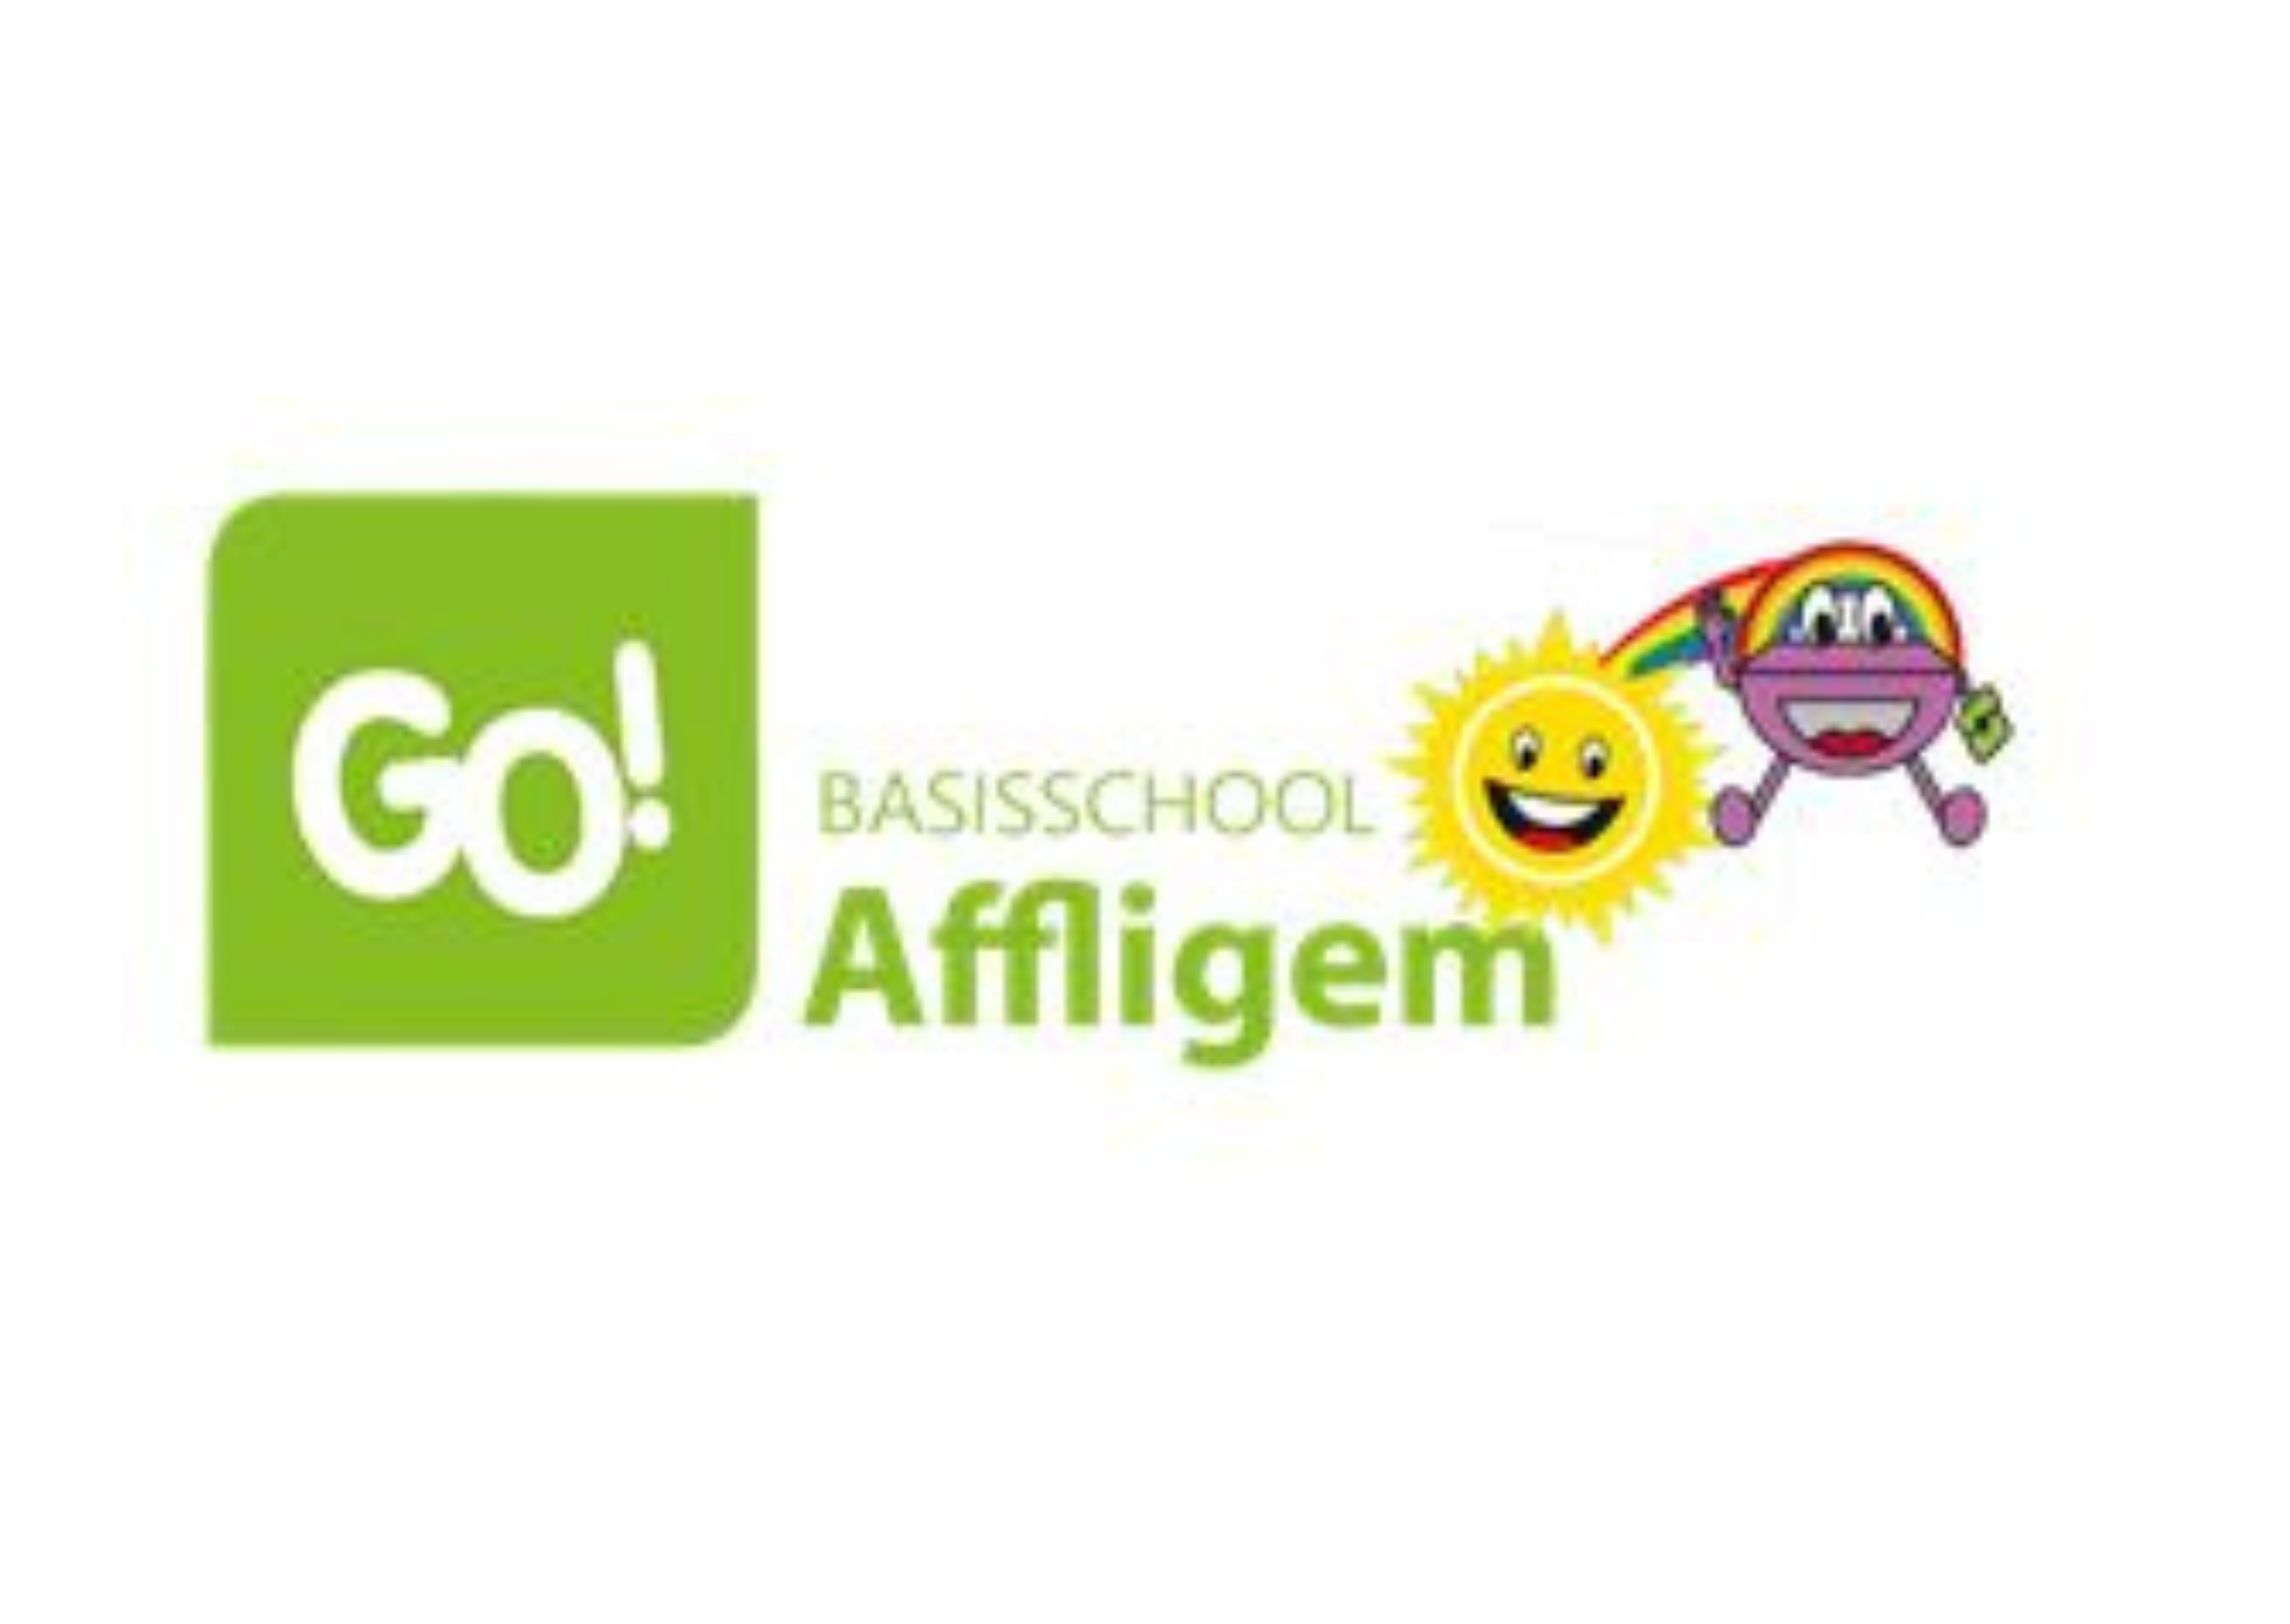 Schoolfeest GO! basisschool De Regenboog Teralfene